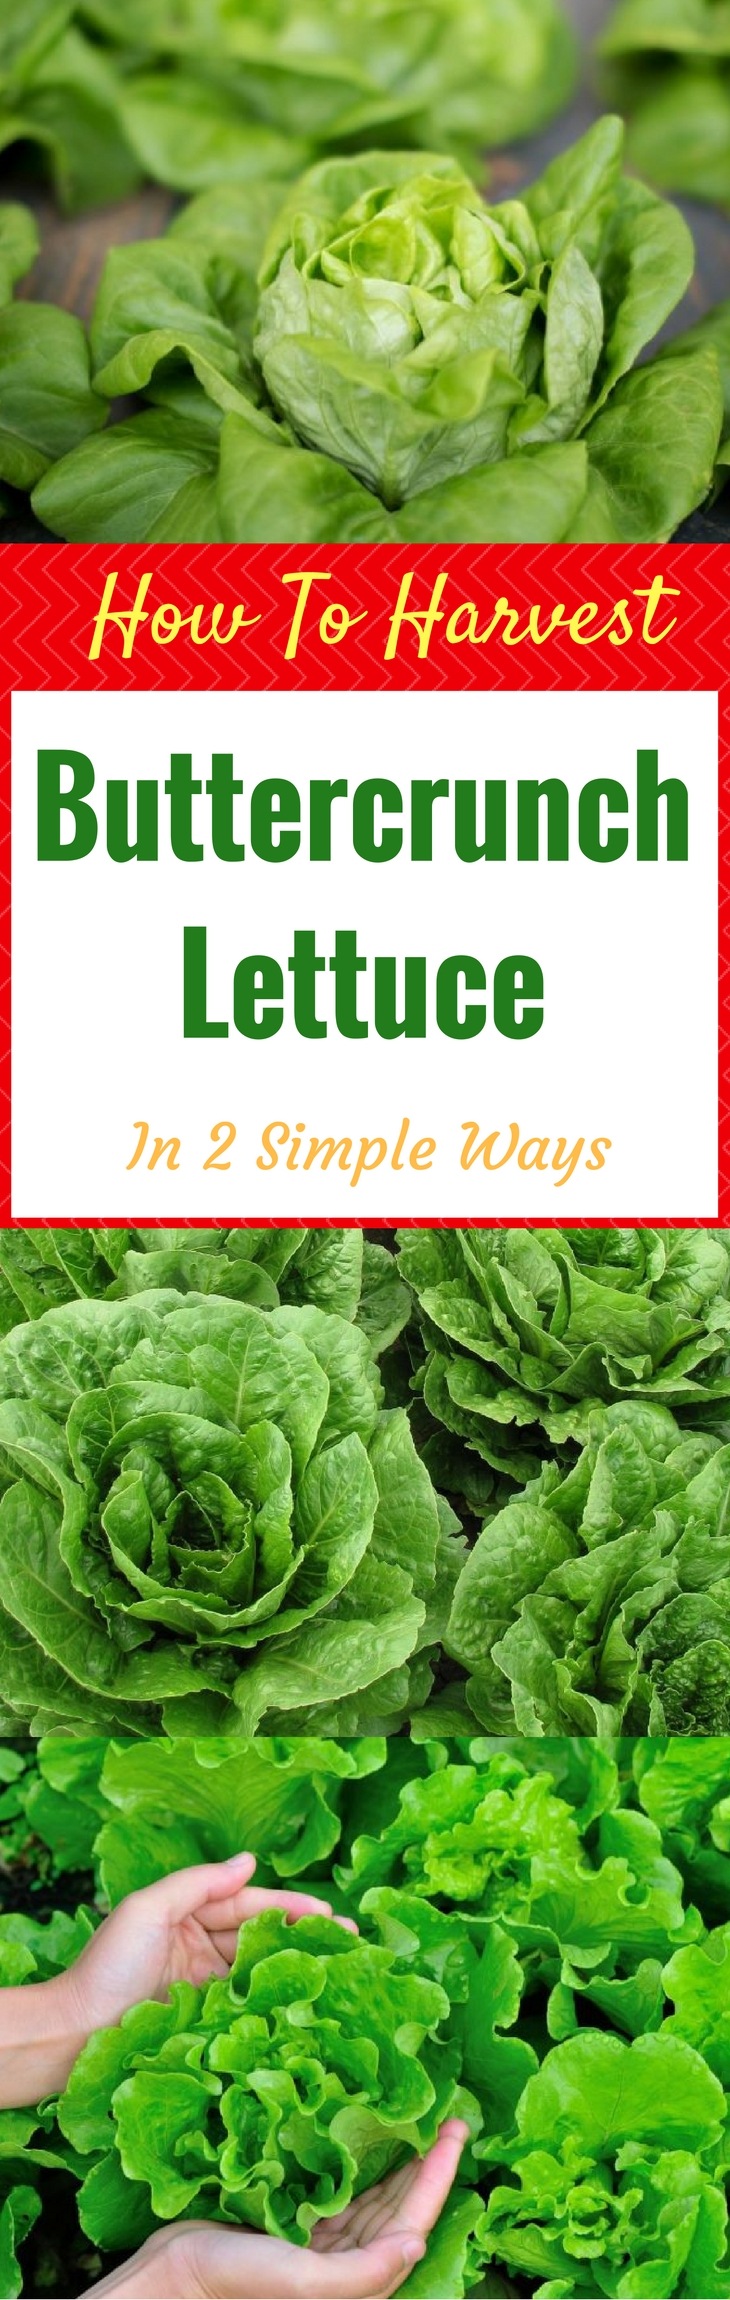 How To Harvest Buttercrunch Lettuce